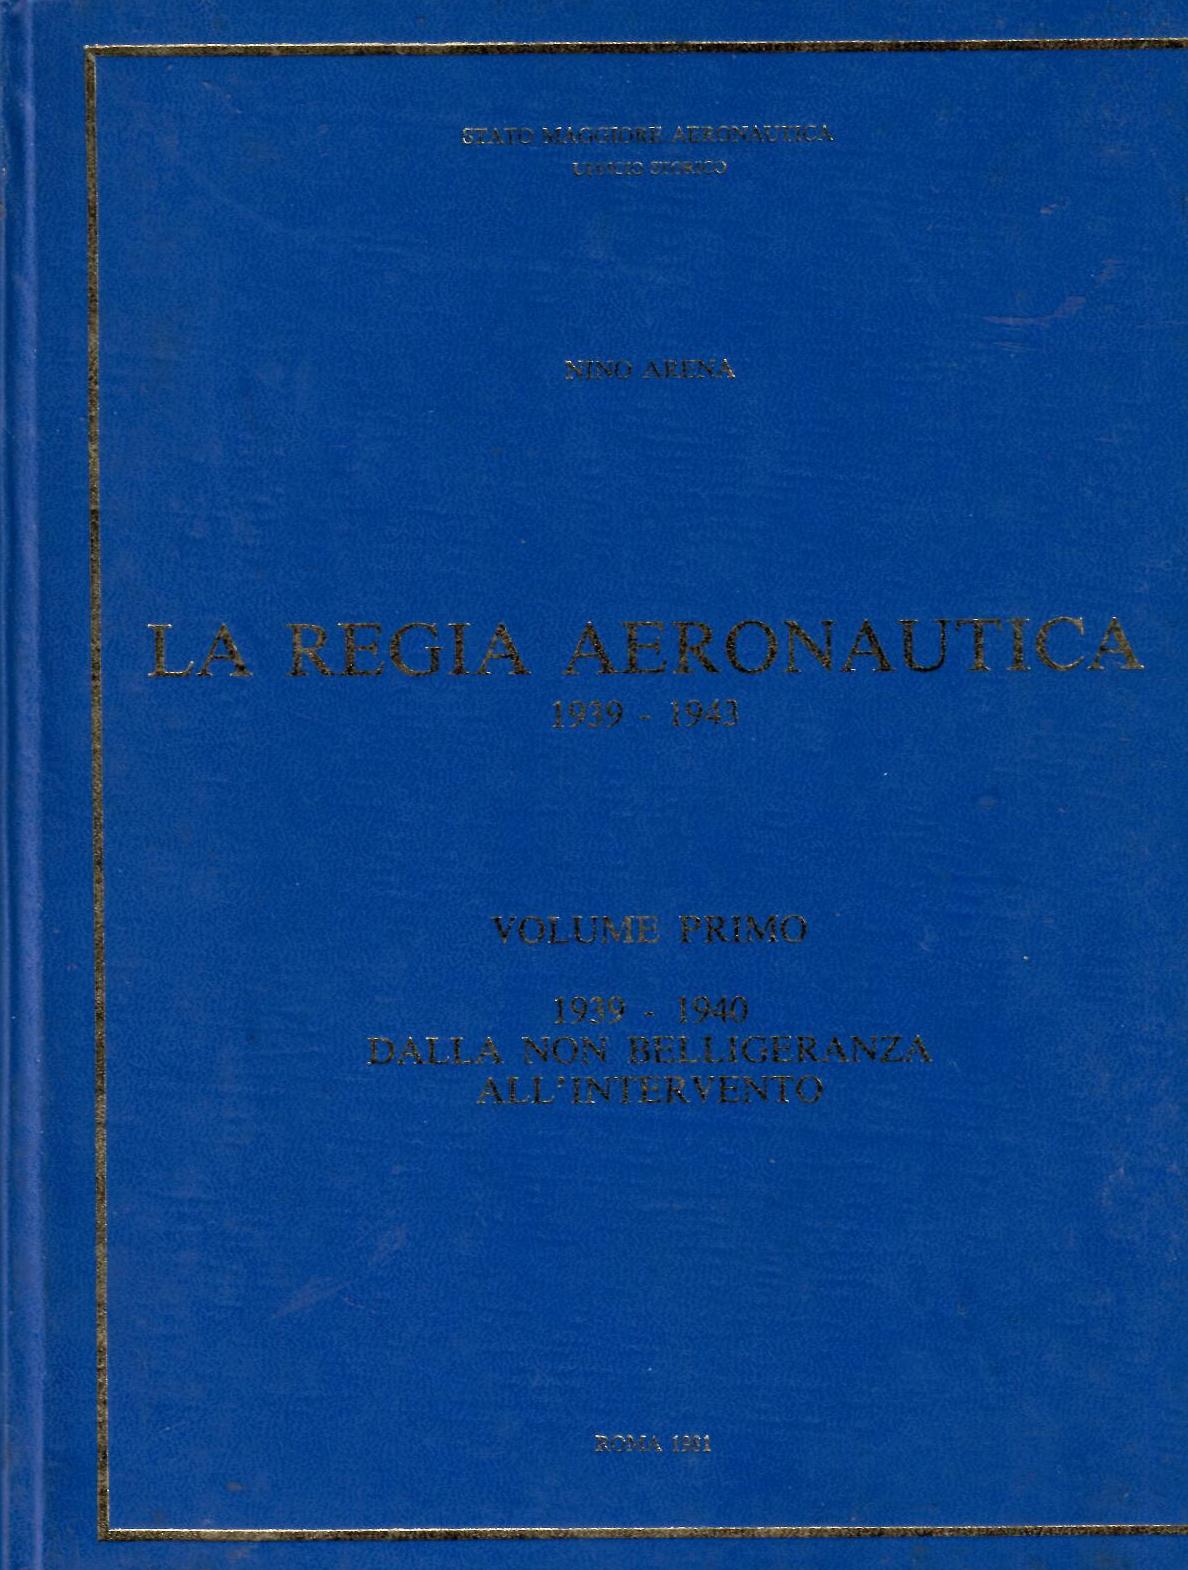 LA Regia Aeronautica 1939-1943. Volume primo: 1939-1940 dalla non belligeranza all’intervento